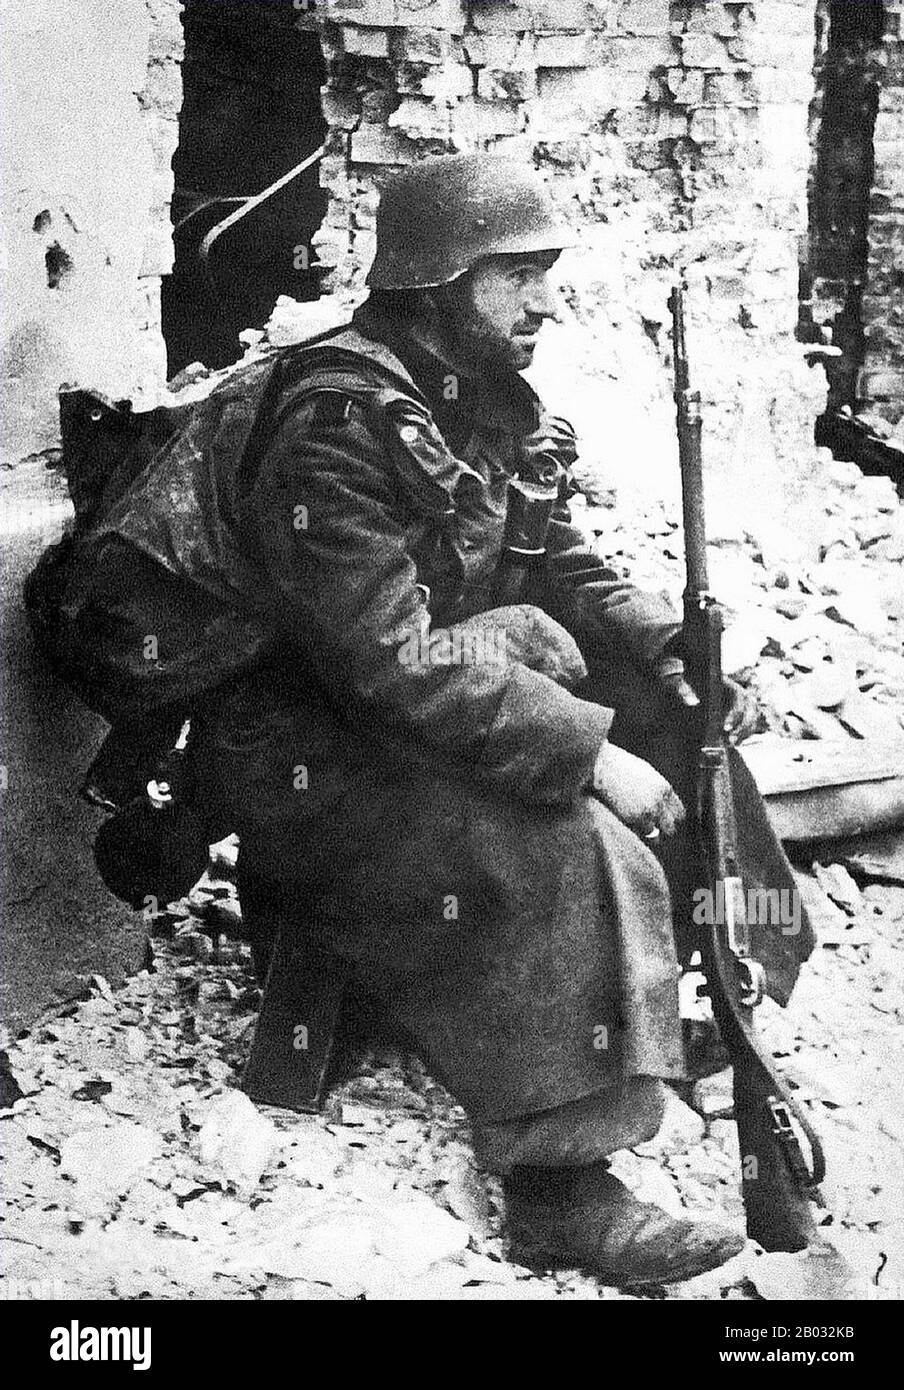 La batalla de Stalingrado (23 de agosto de 1942 – 2 de febrero de 1943) fue  una batalla importante en el frente Oriental de la Segunda Guerra Mundial  en la que la